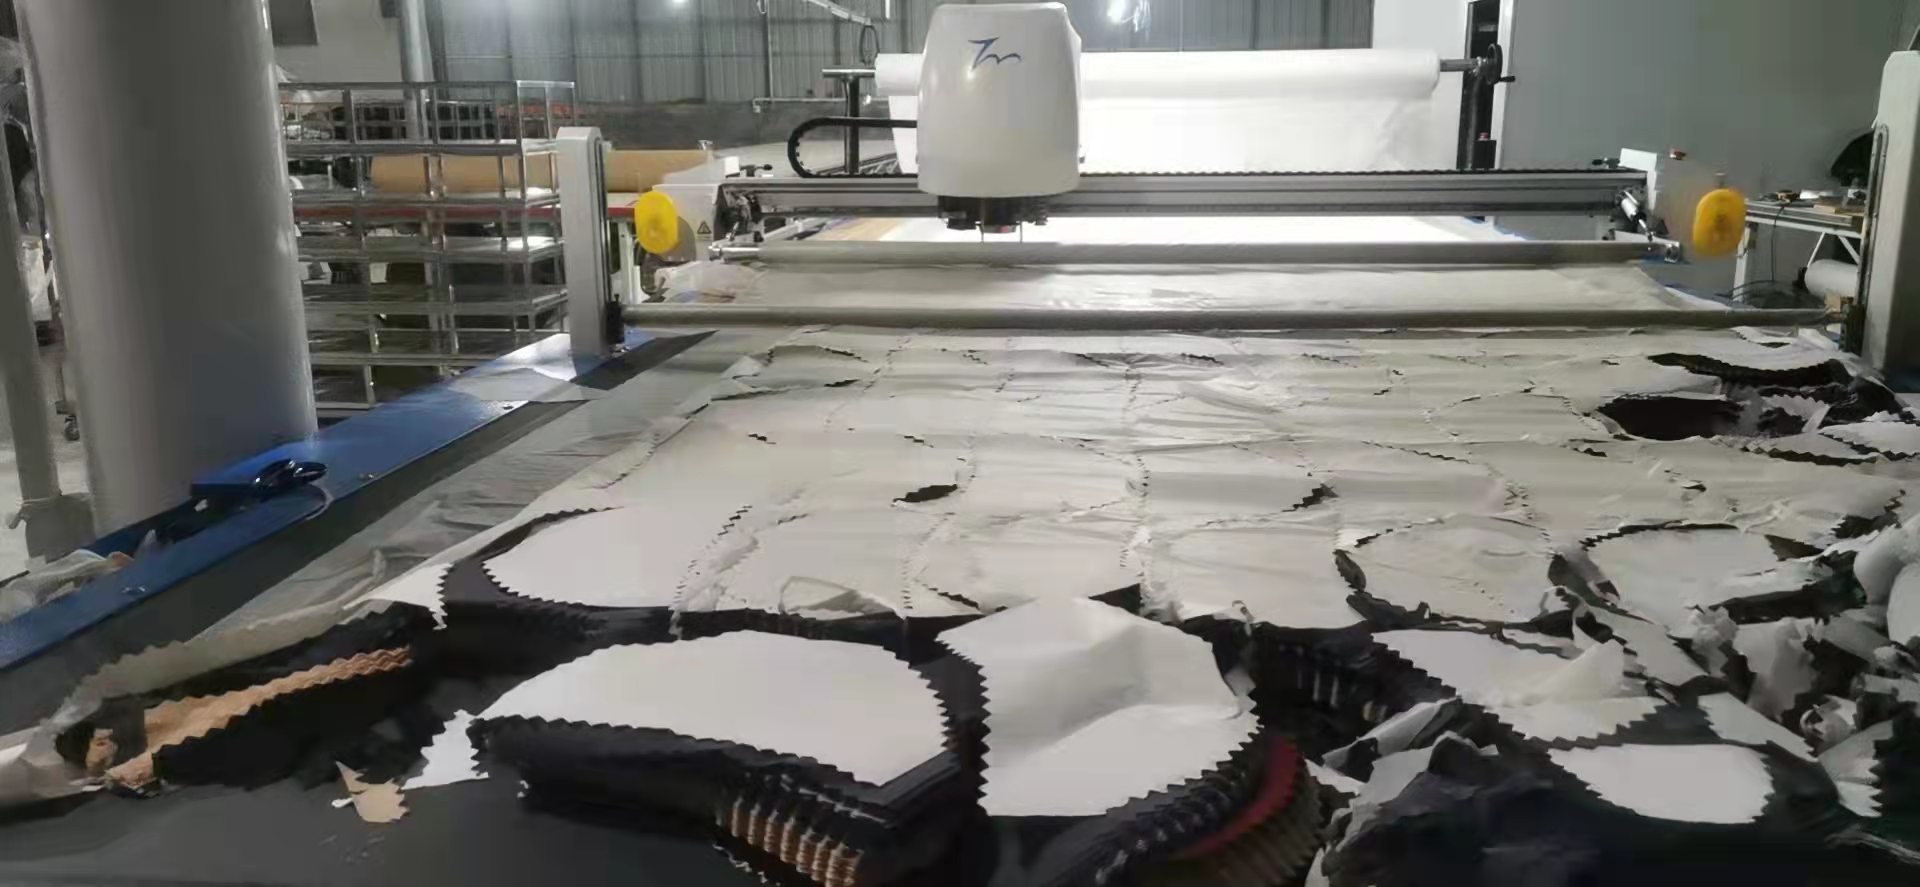 Automatic fabric cutter machine